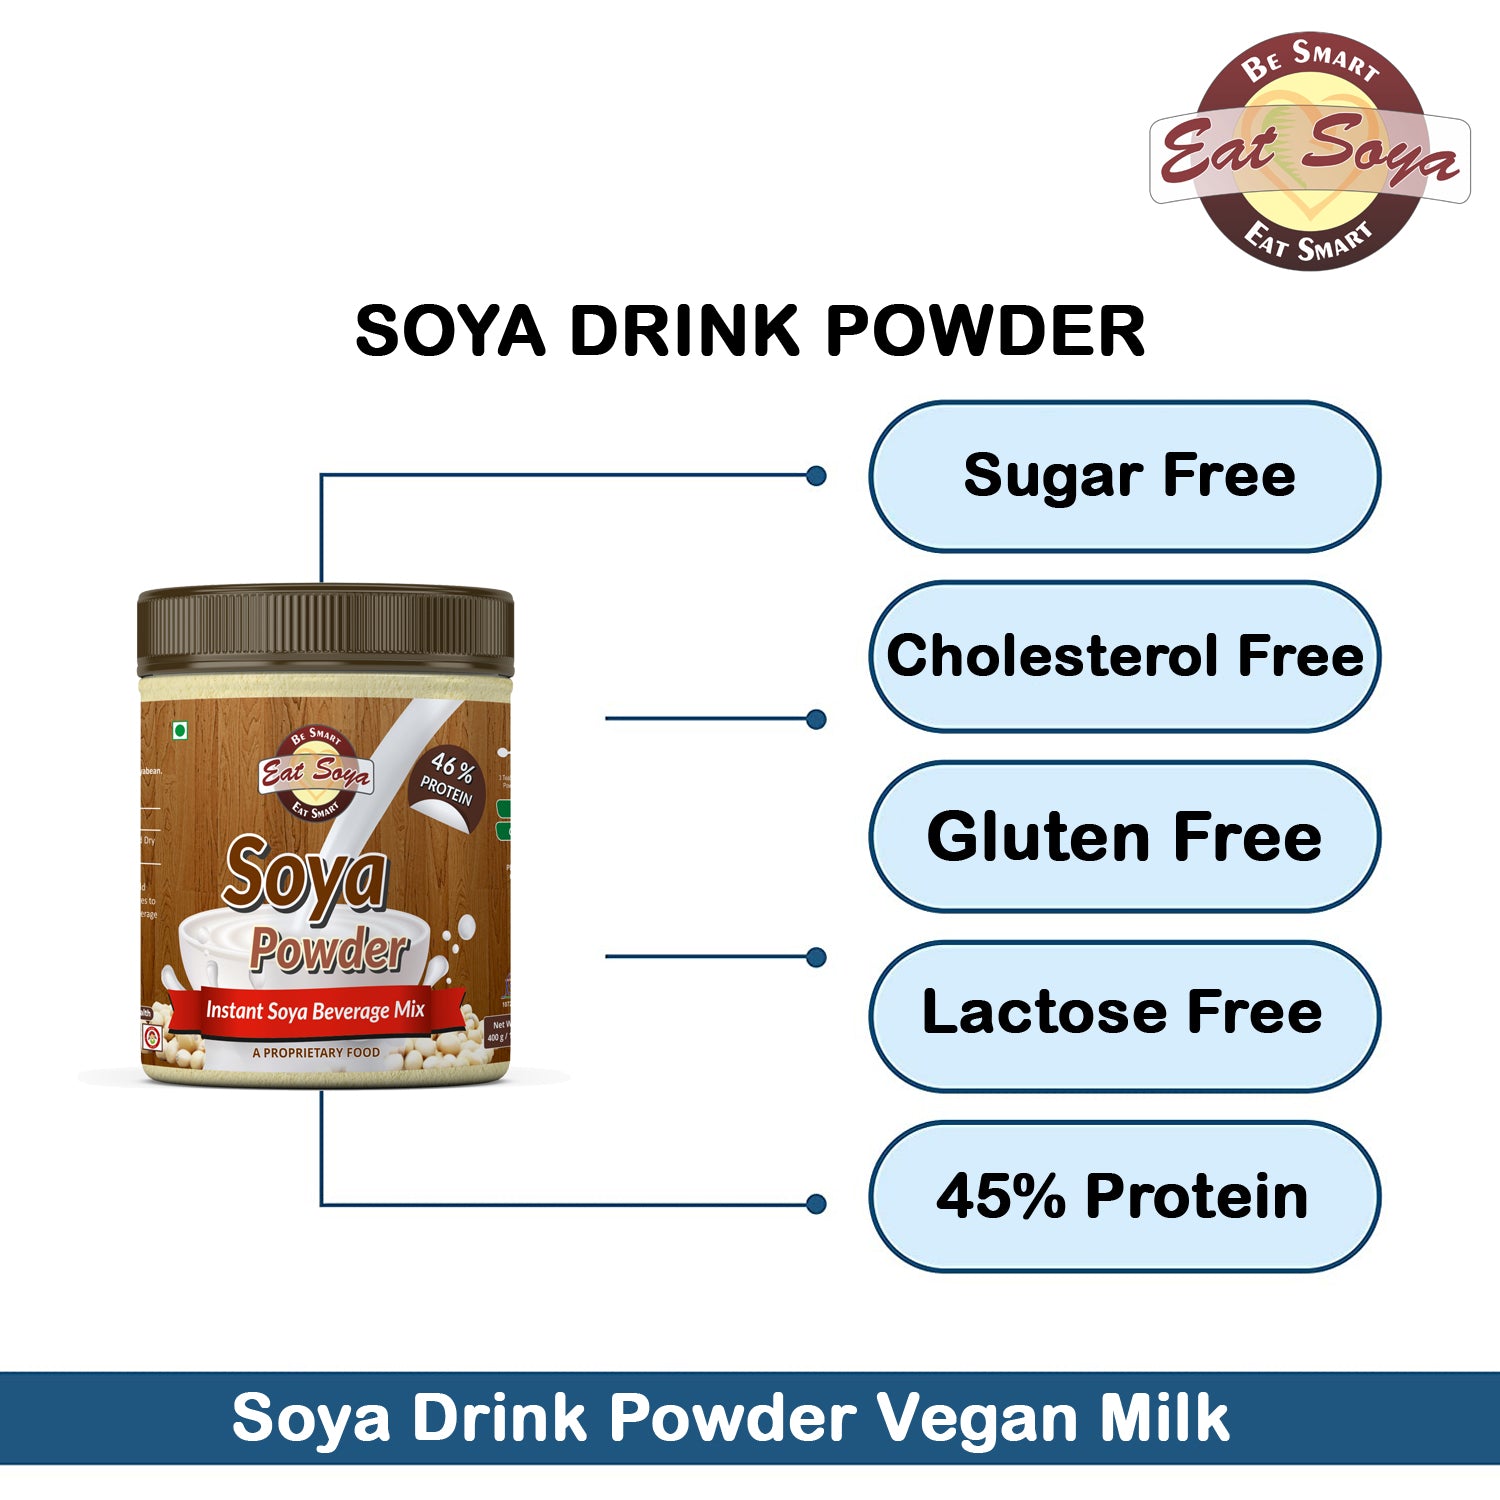 Soya Drink Powder Plain - Sugar Free 46% Protein